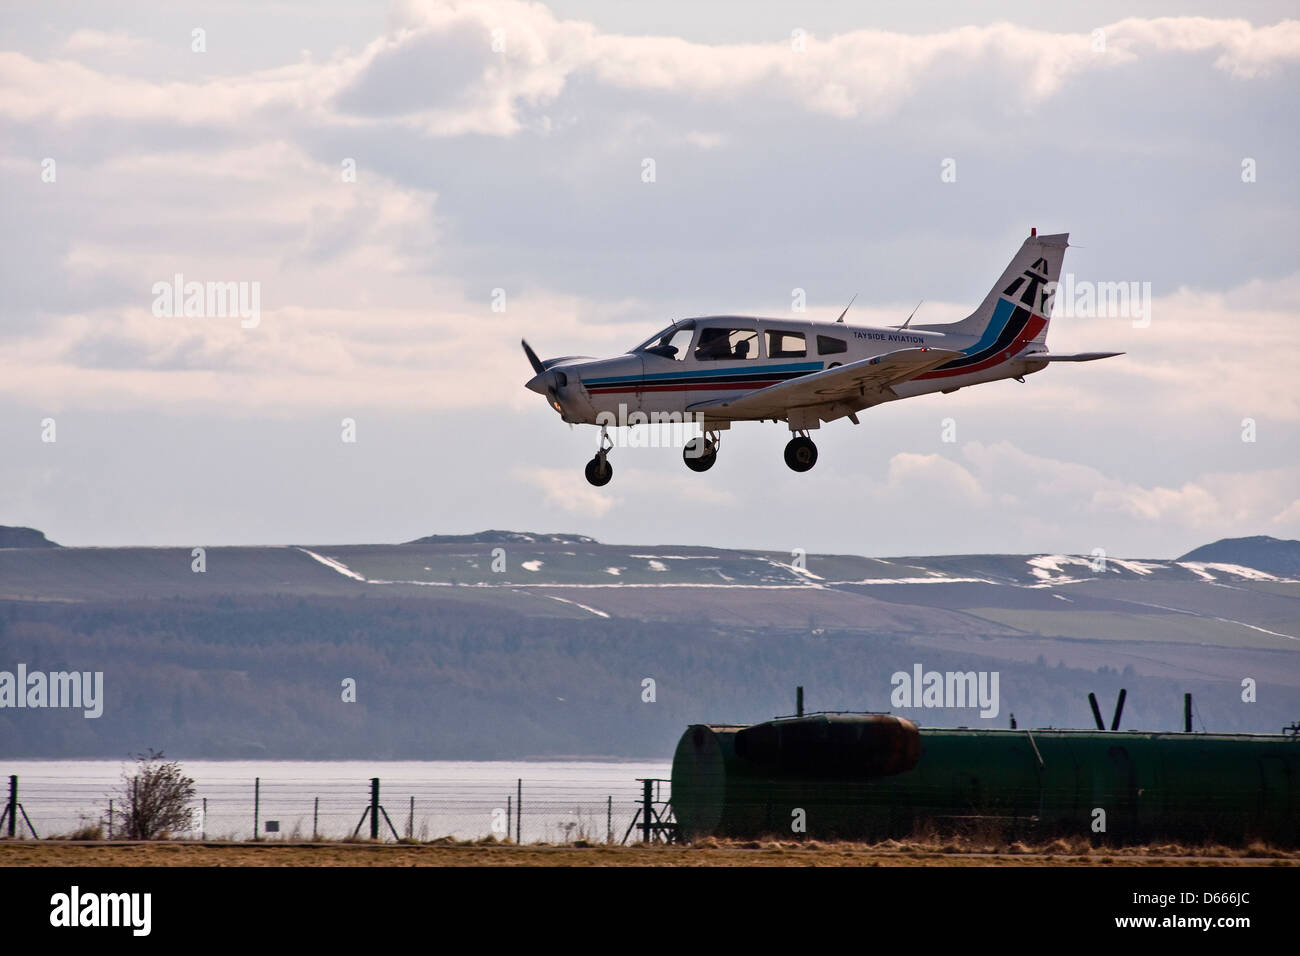 Aviation Tayside Piper PA-28 Warrior G-BIIT appareil approchait de la piste pour atterrir à l'aéroport de Dundee, Royaume-Uni Banque D'Images